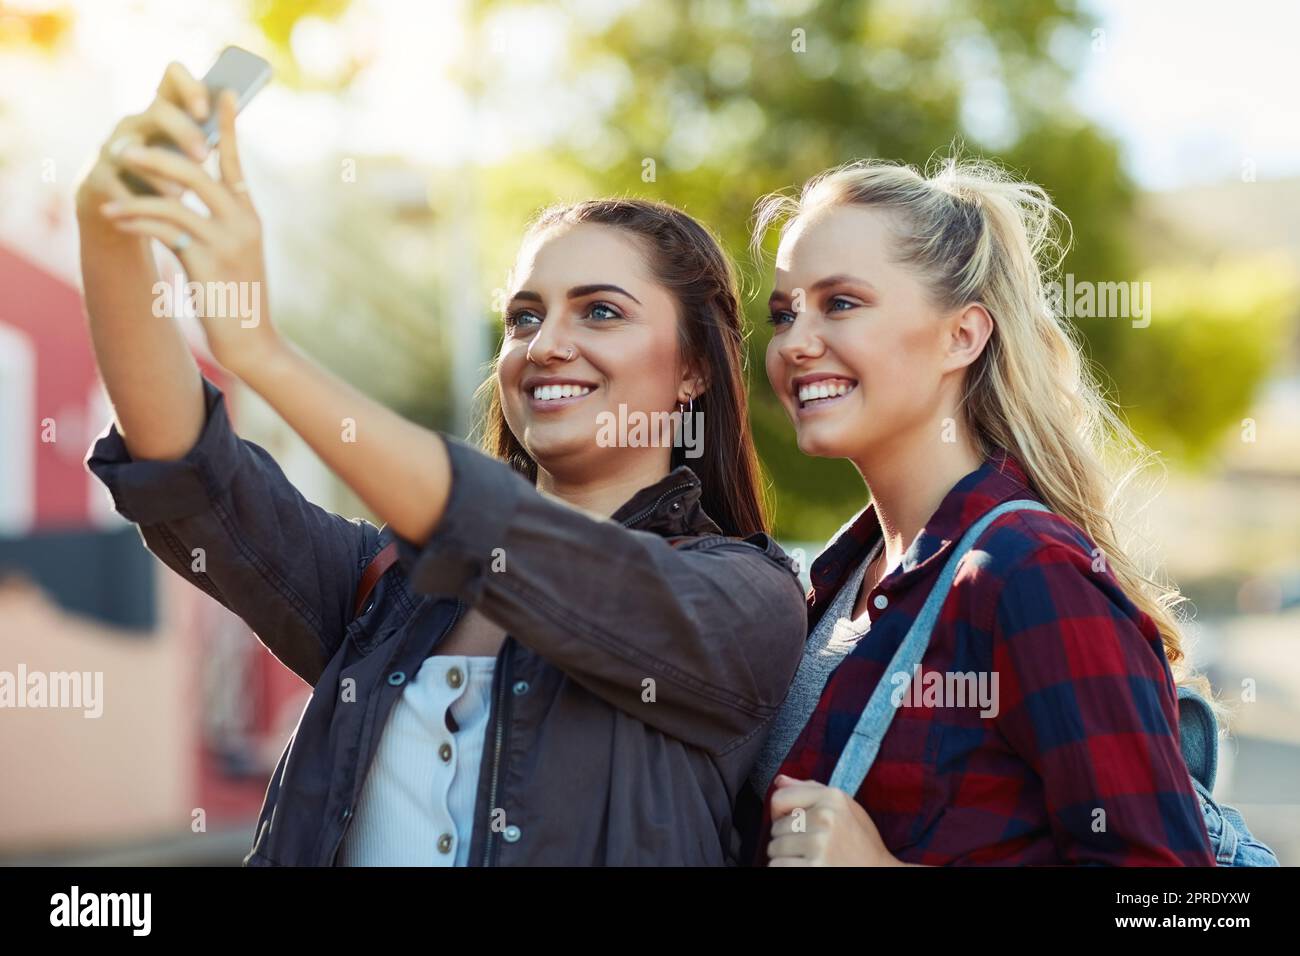 Wir machen Fotos, um auf unsere Erfahrungen zurückzublicken. Zwei schöne Freundinnen, die ein Selfie in der Stadt machen. Stockfoto